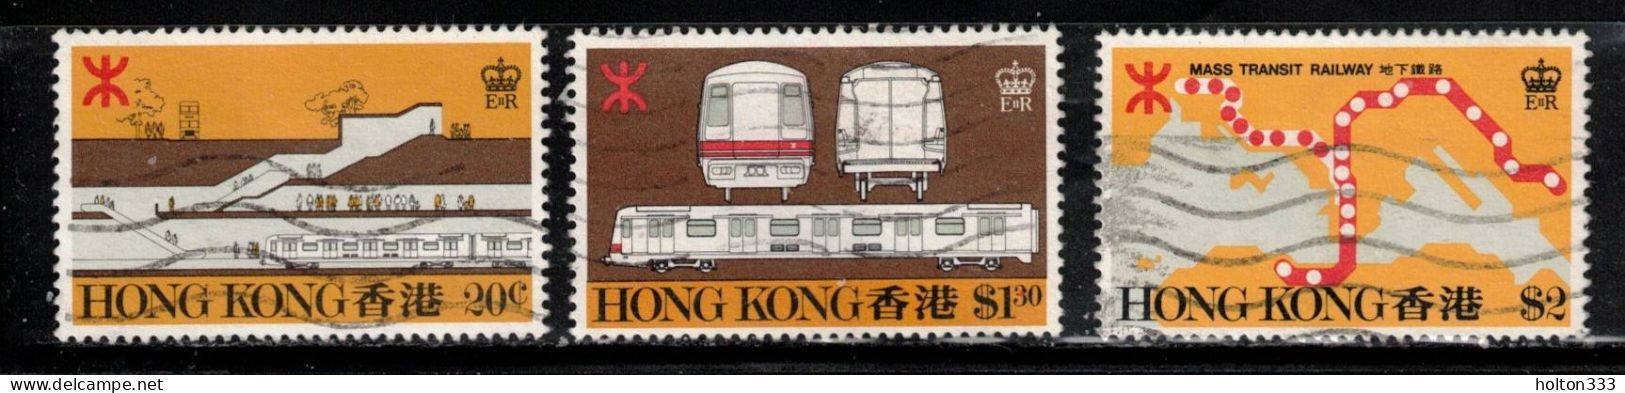 HONG KONG Scott # 358-60 Used - Hong Kong Railway - Used Stamps